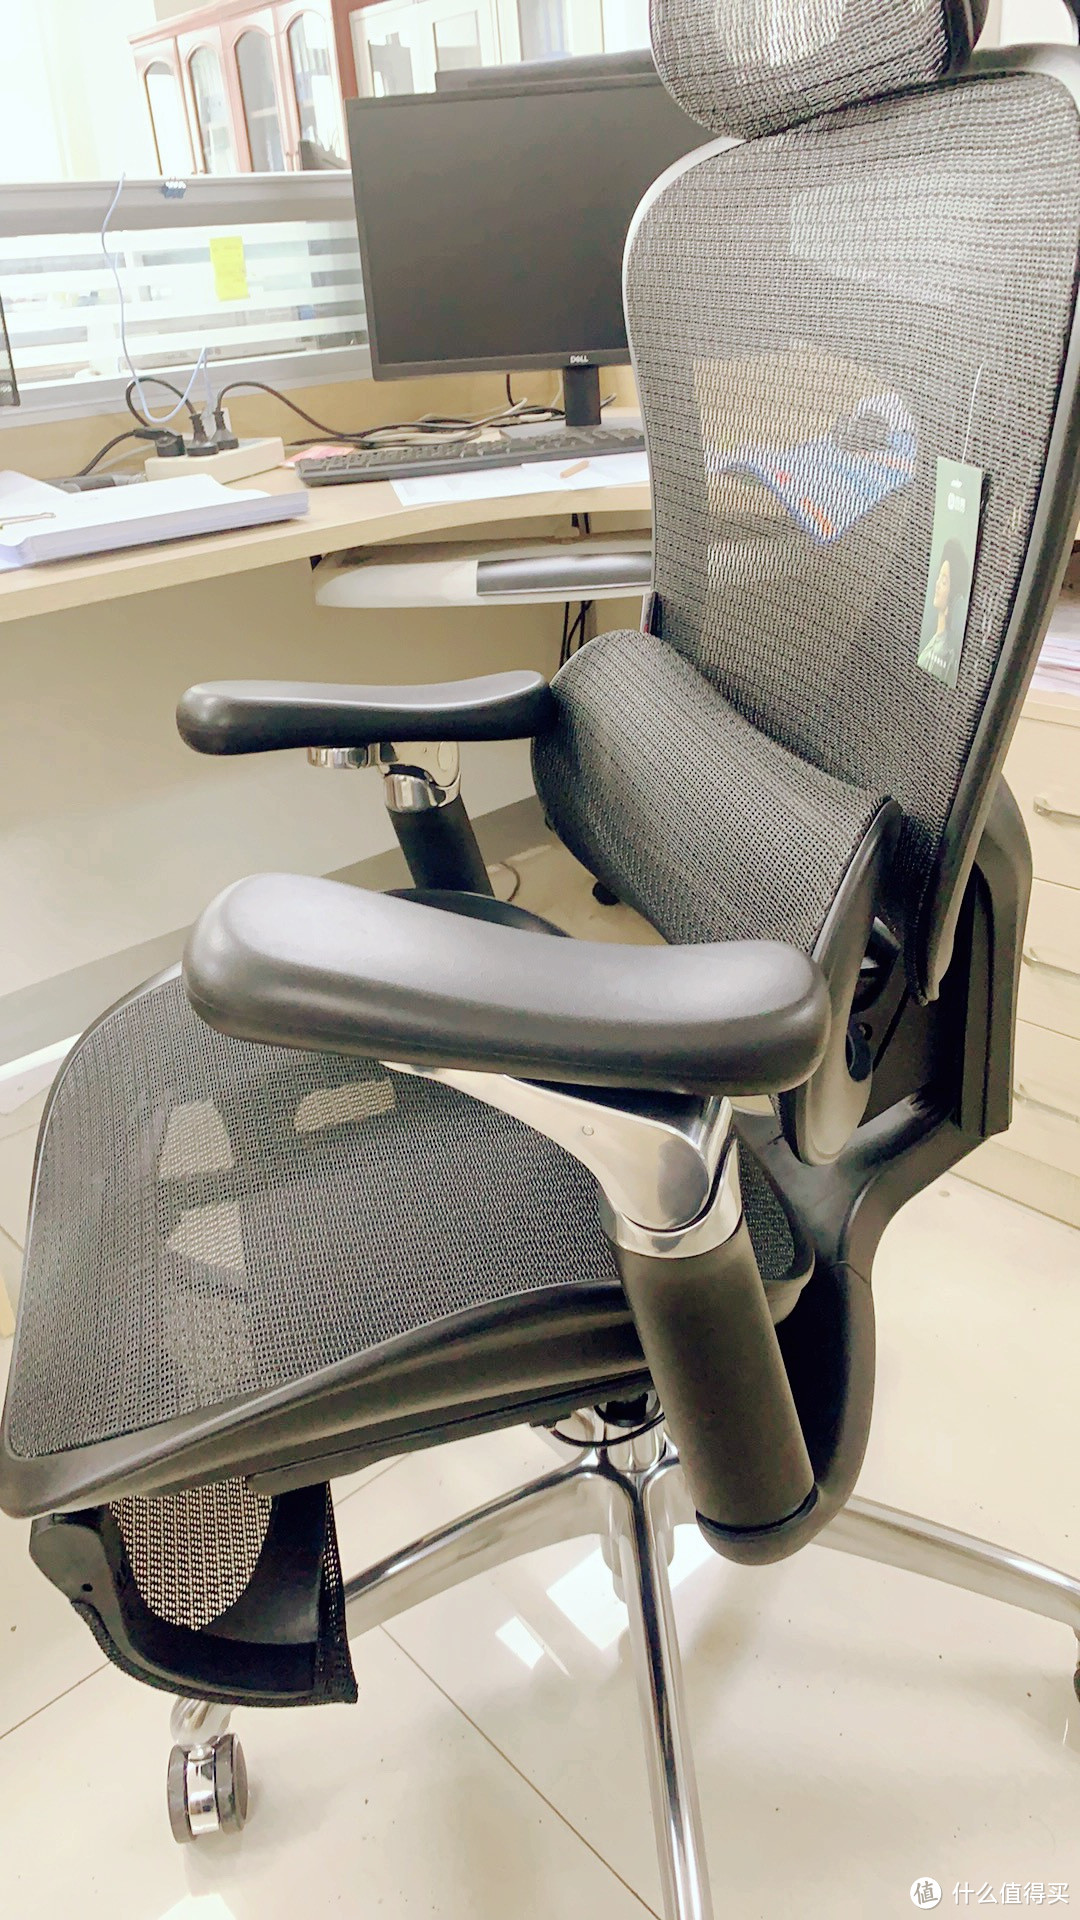 西昊公司推出了一款创新的人体工学椅